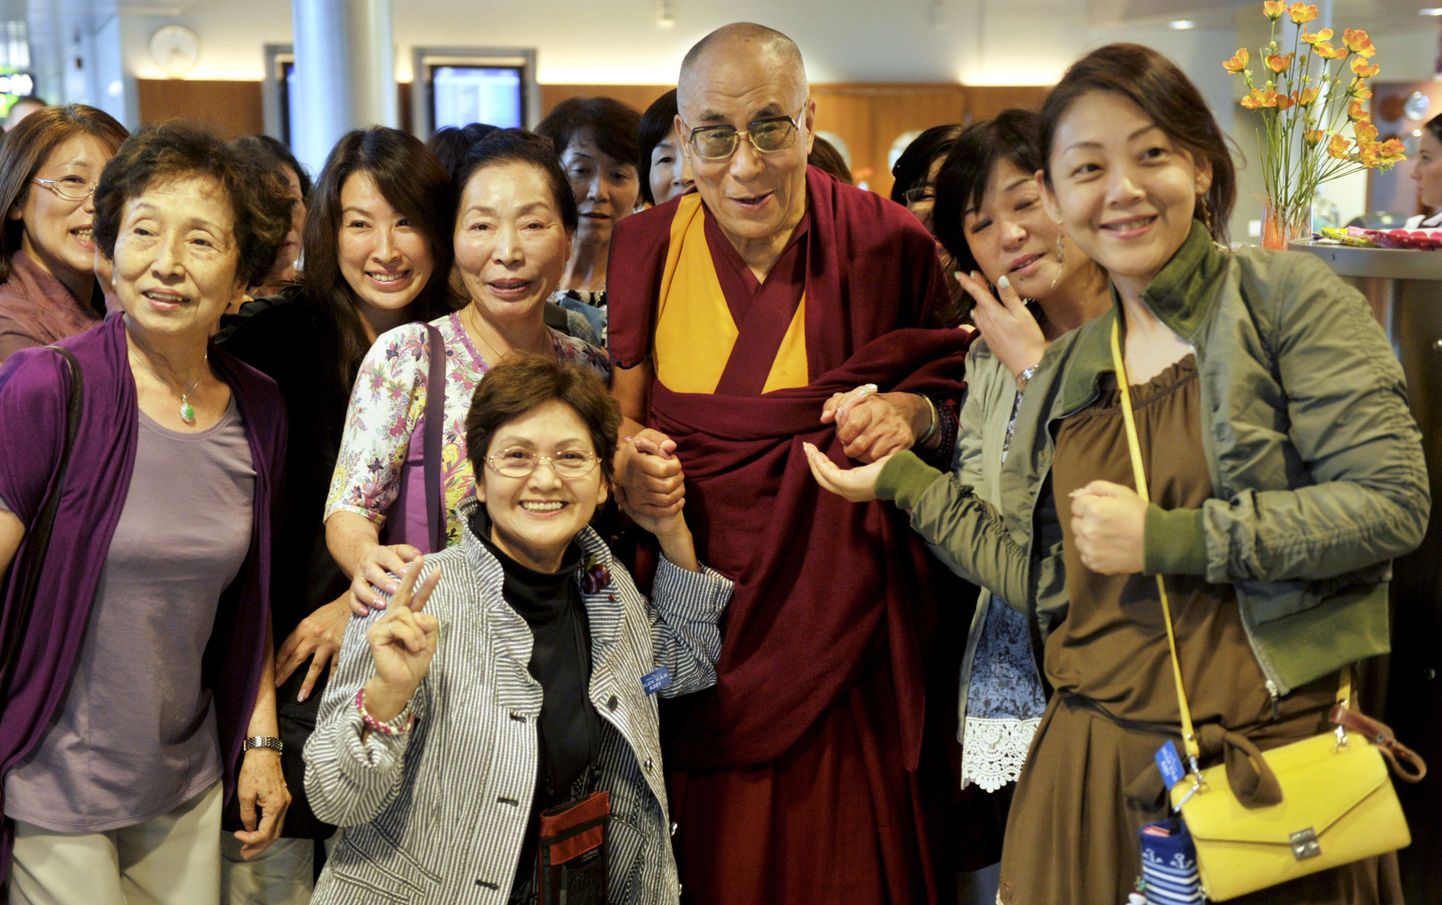 Tiiberi usujuht dalai-laama Helsingi Vantaa lennuväljal Jaapani turistidega tehtud ühispildi 18. augustil 2011.